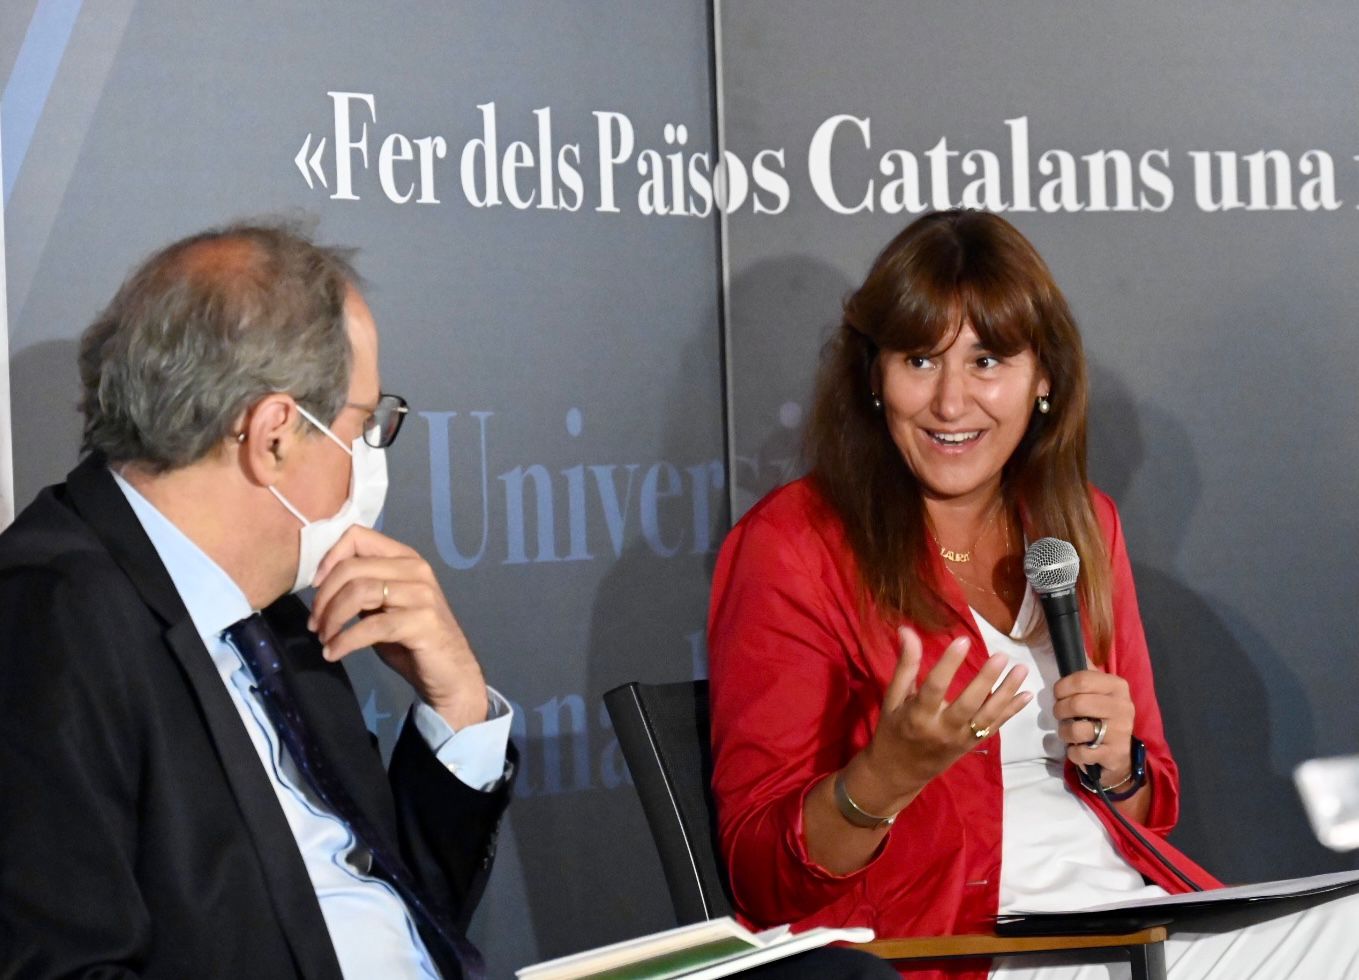 Laura Borràs Quim Torra universitat catalana 3  / UCE